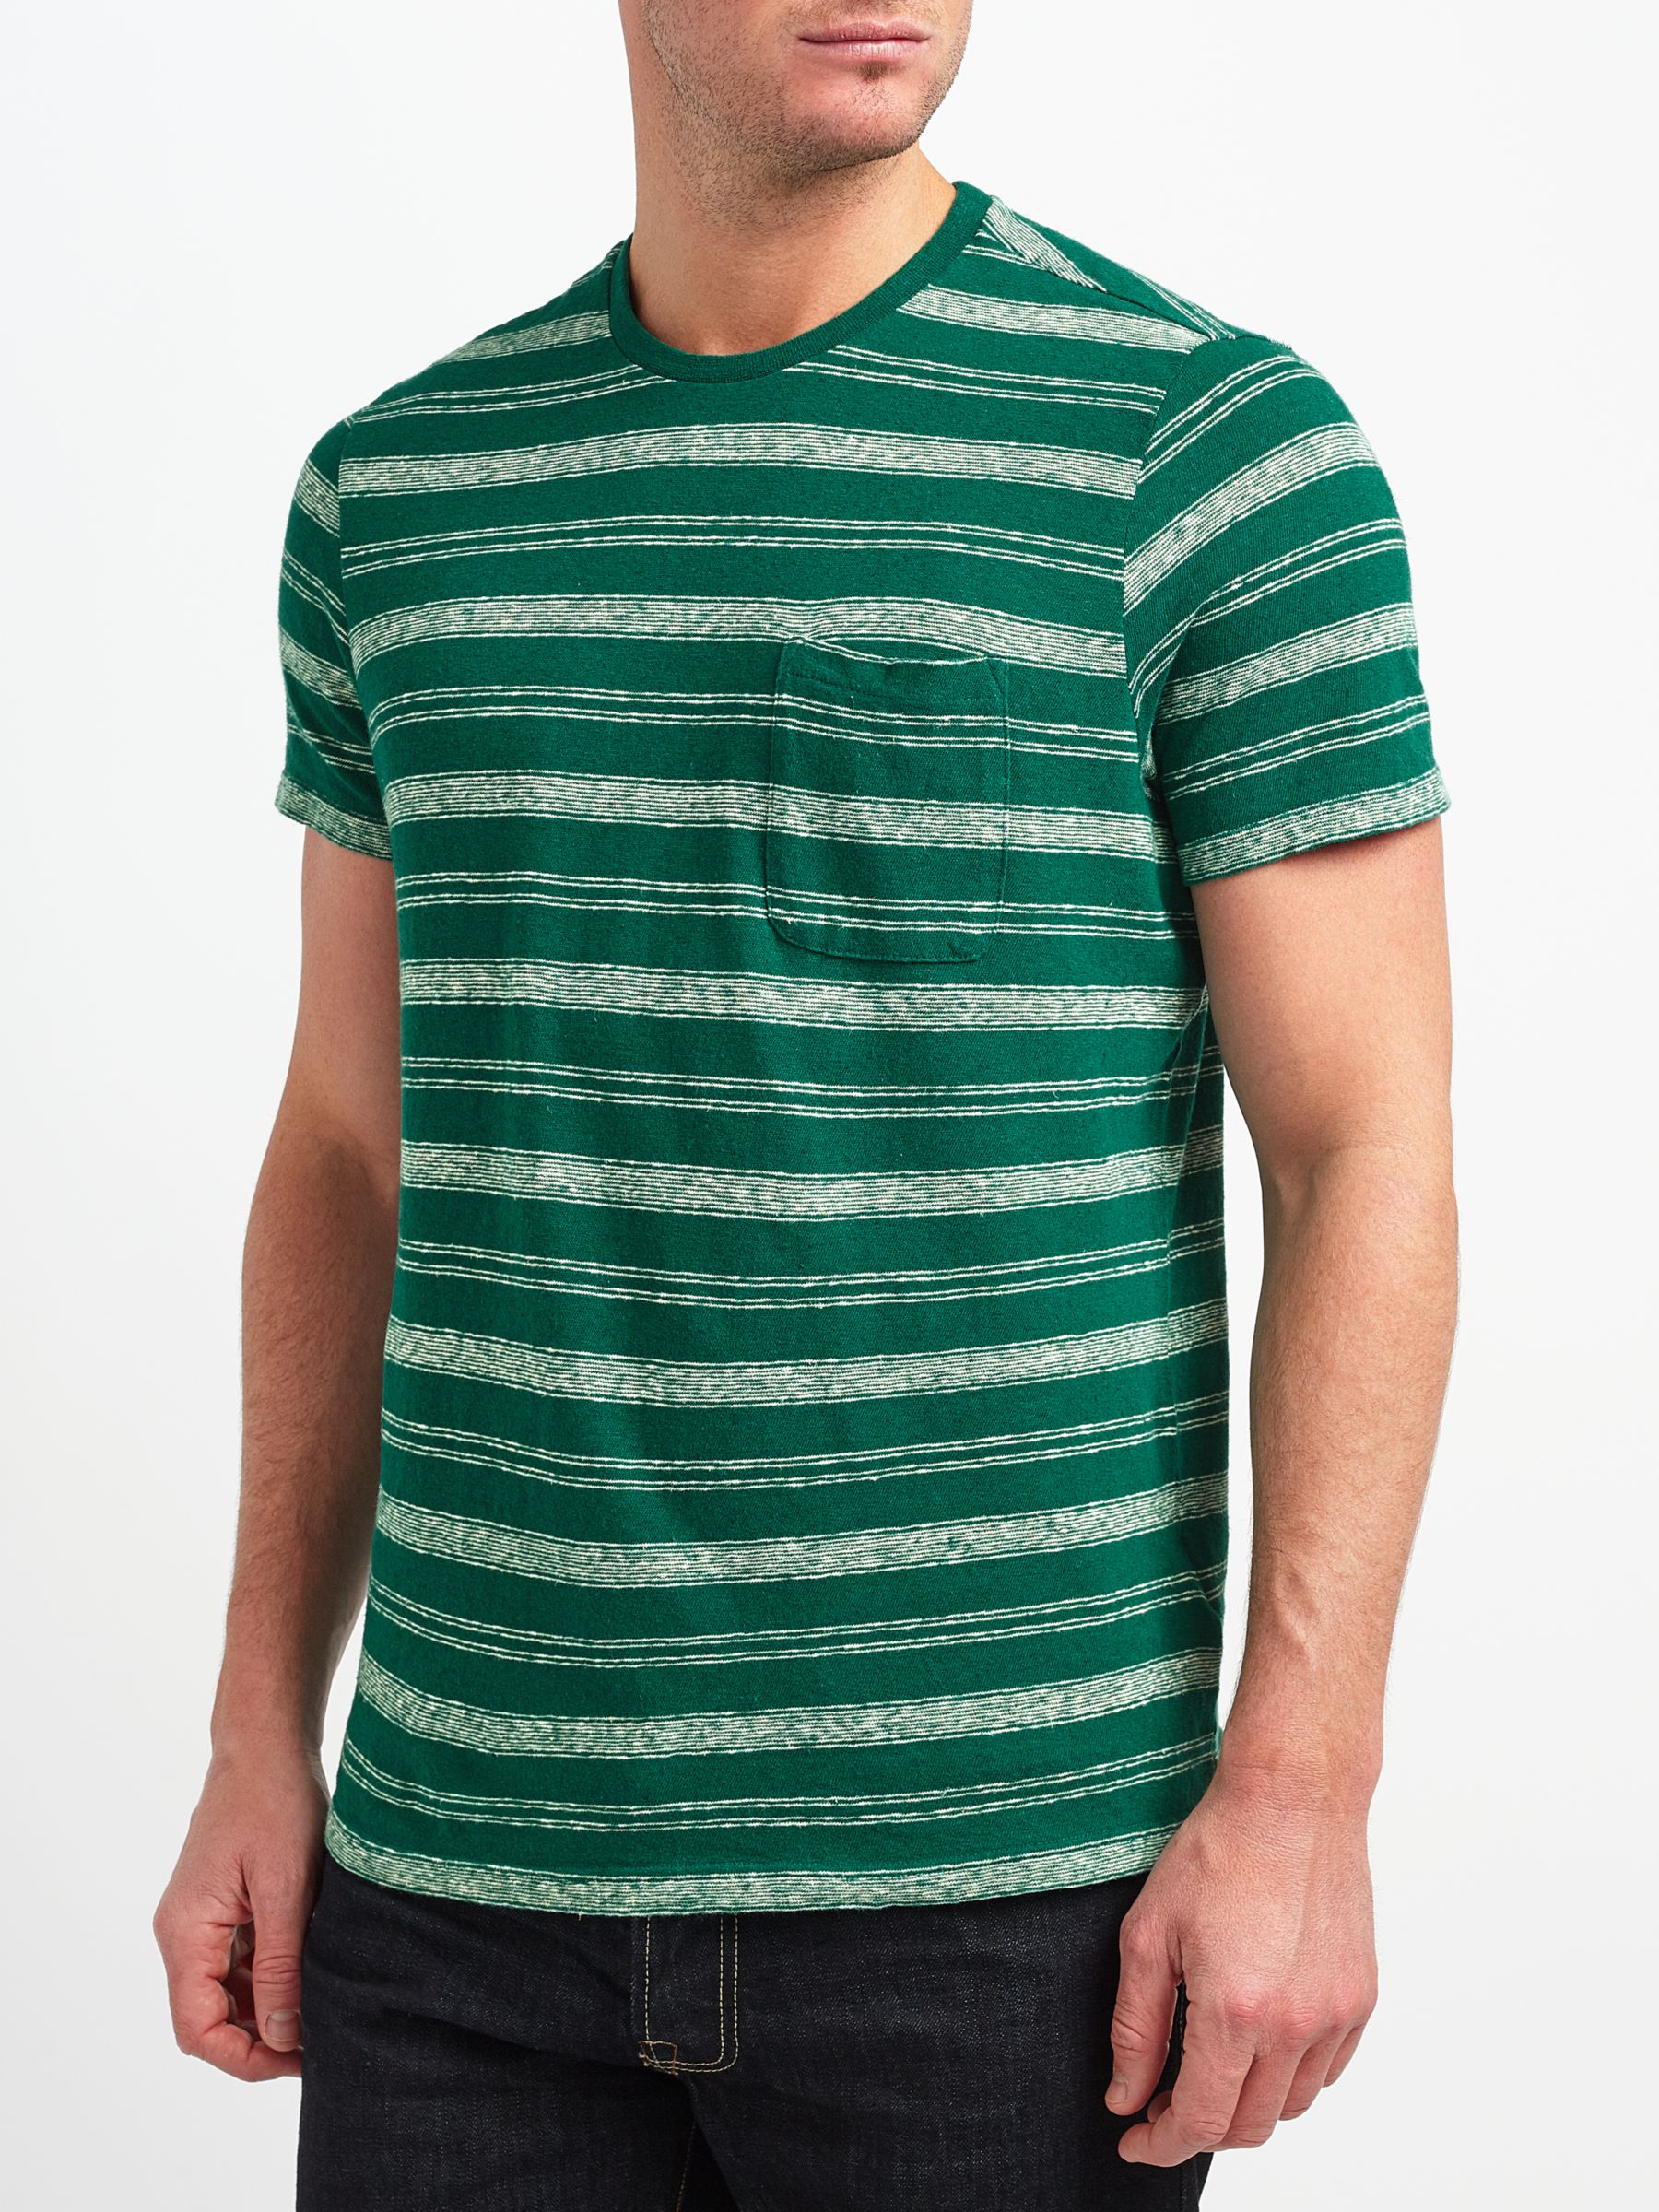 JOHN LEWIS & Co. Cotton Linen Stripe T-Shirt, Green, M